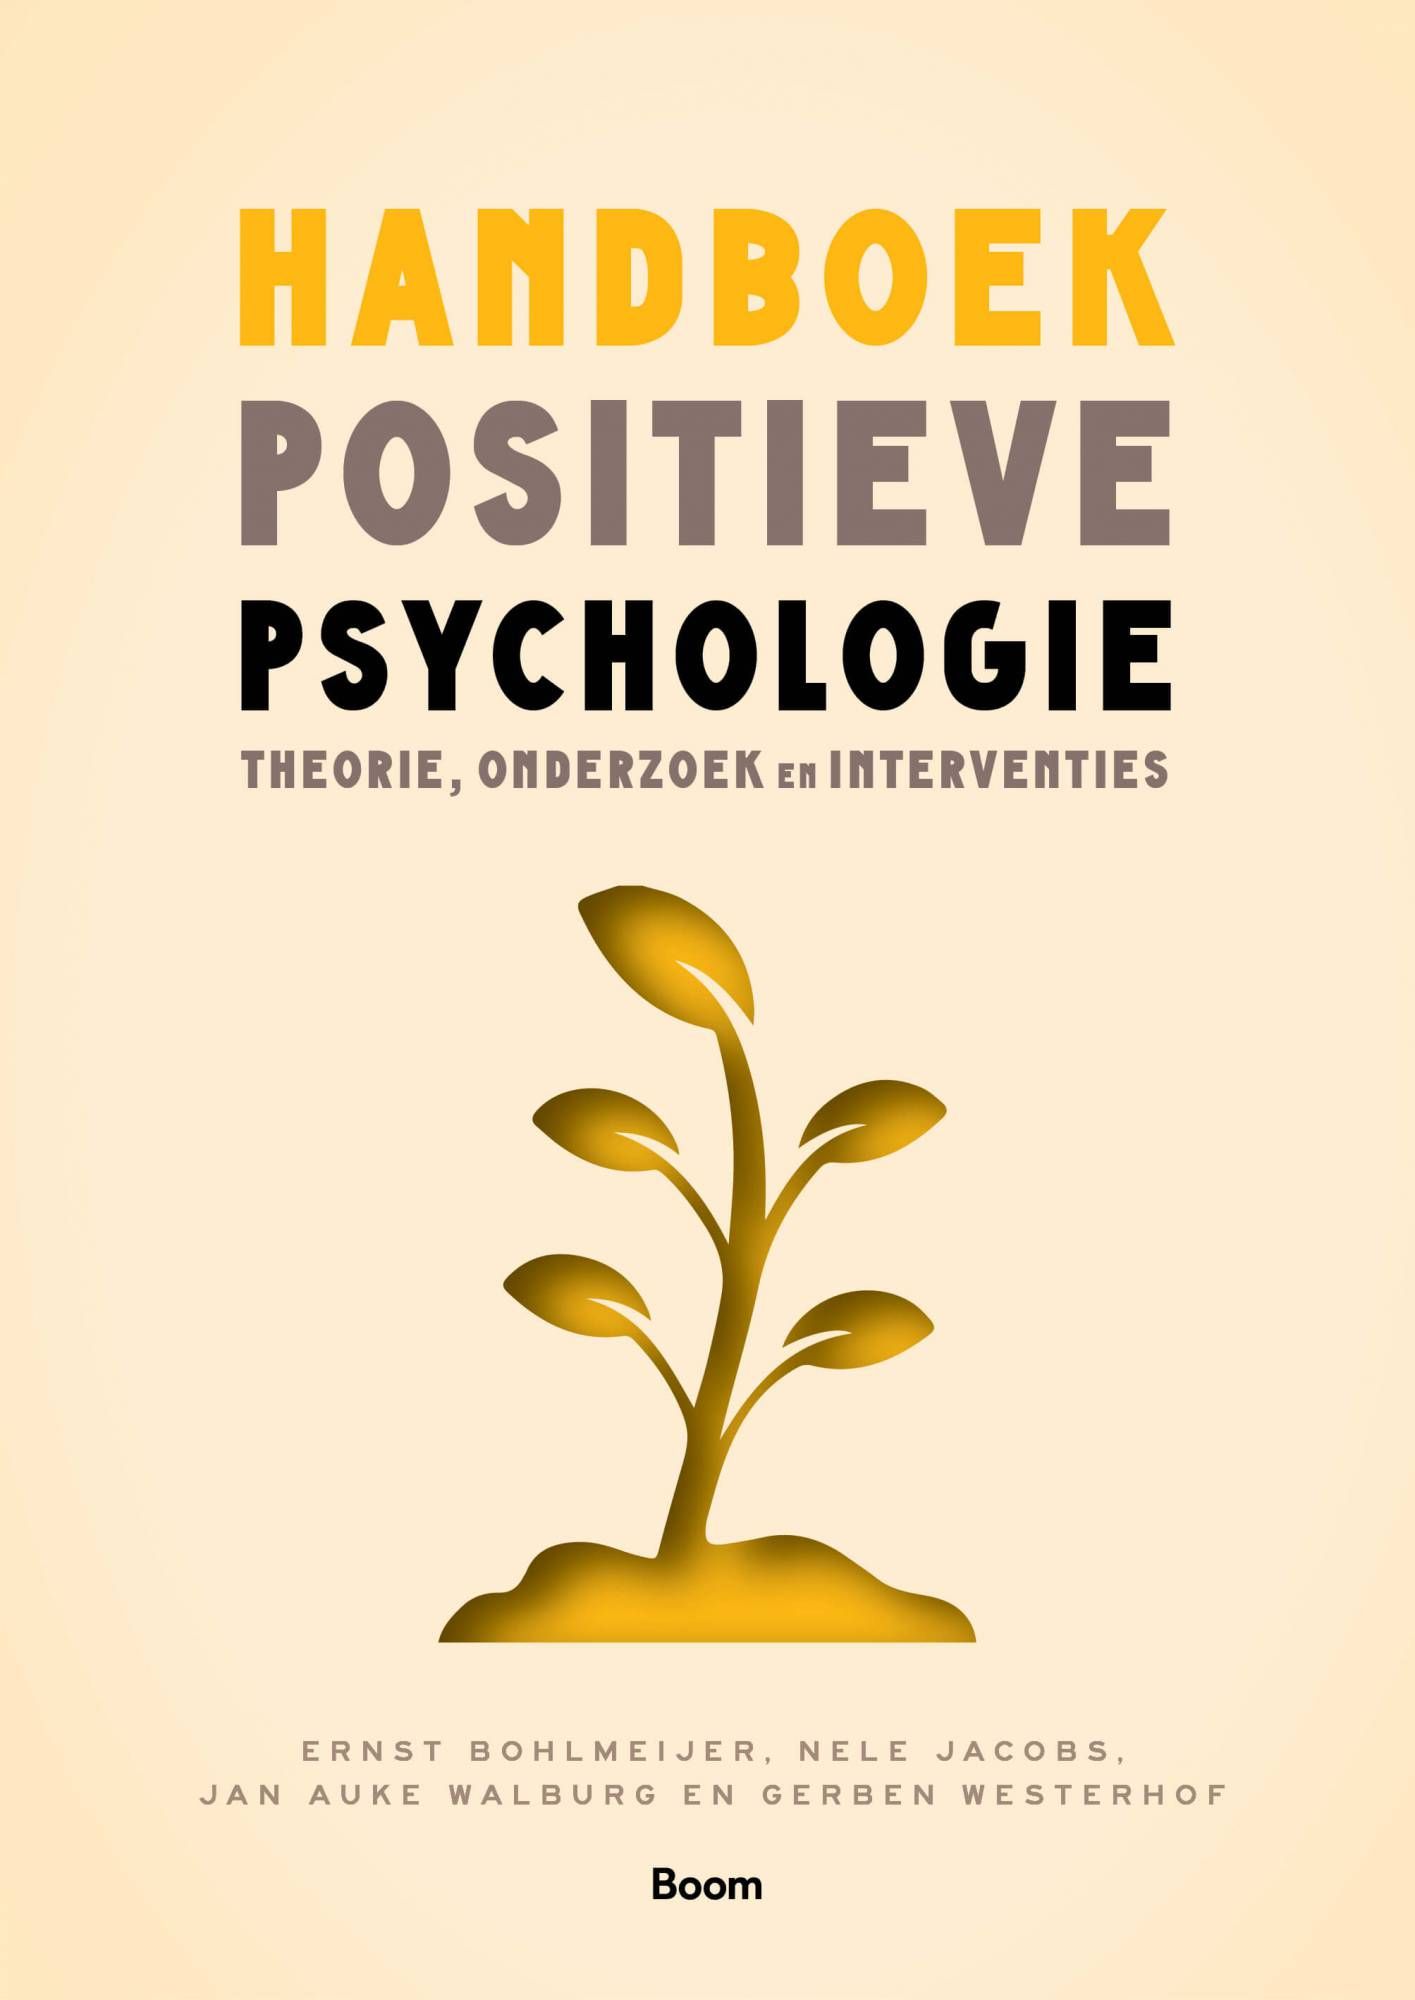 "Compassie", in: "Handboek positieve psychologie - Theorie, onderzoek en interventies"